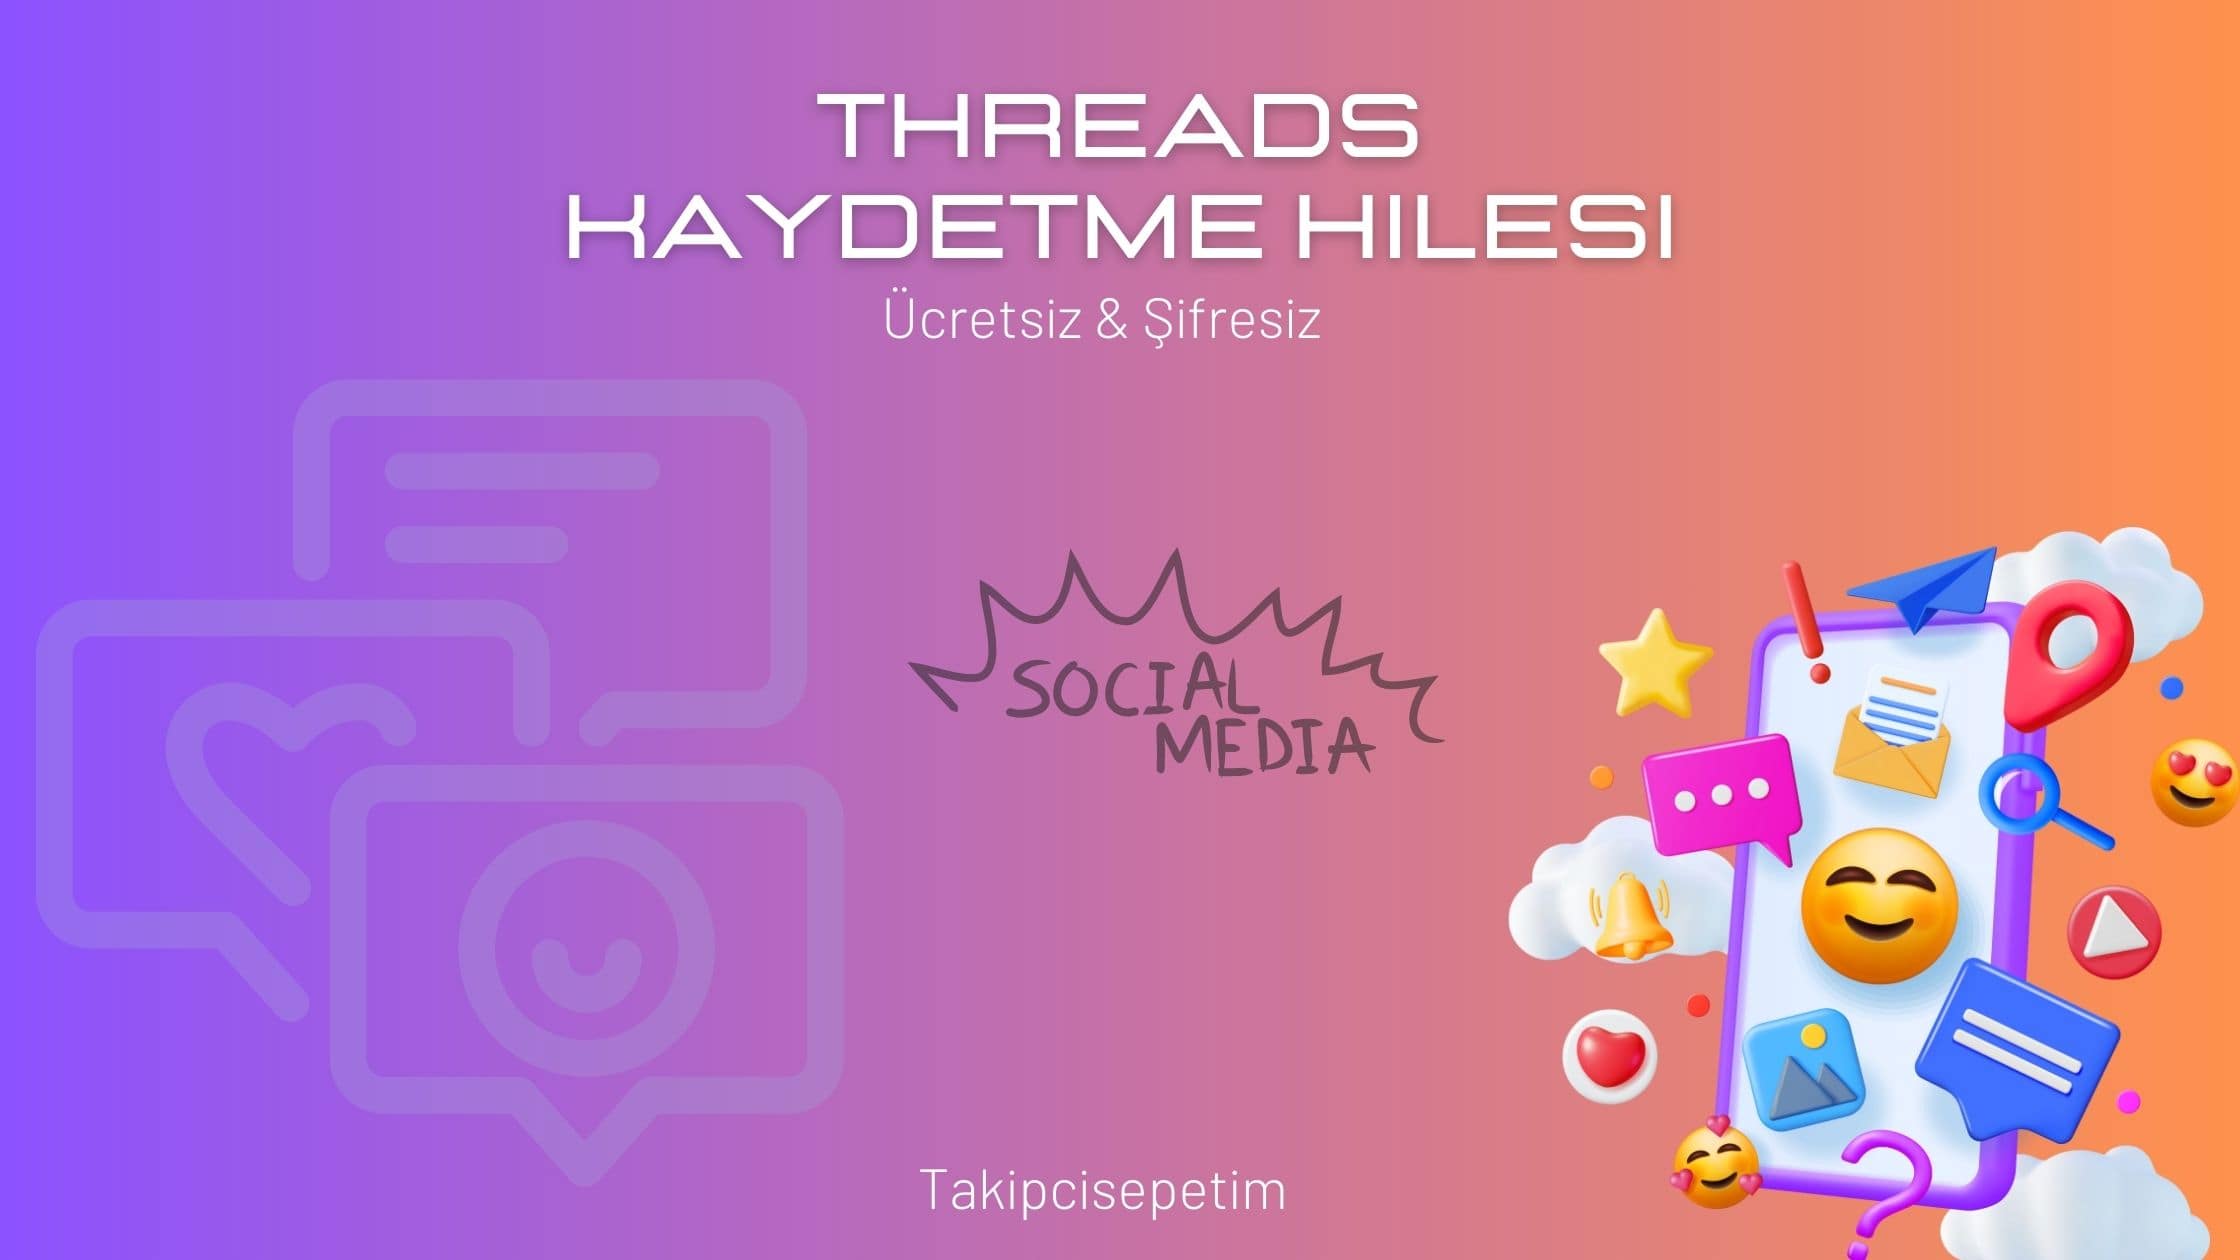 Threads Kaydetme Hilesi 